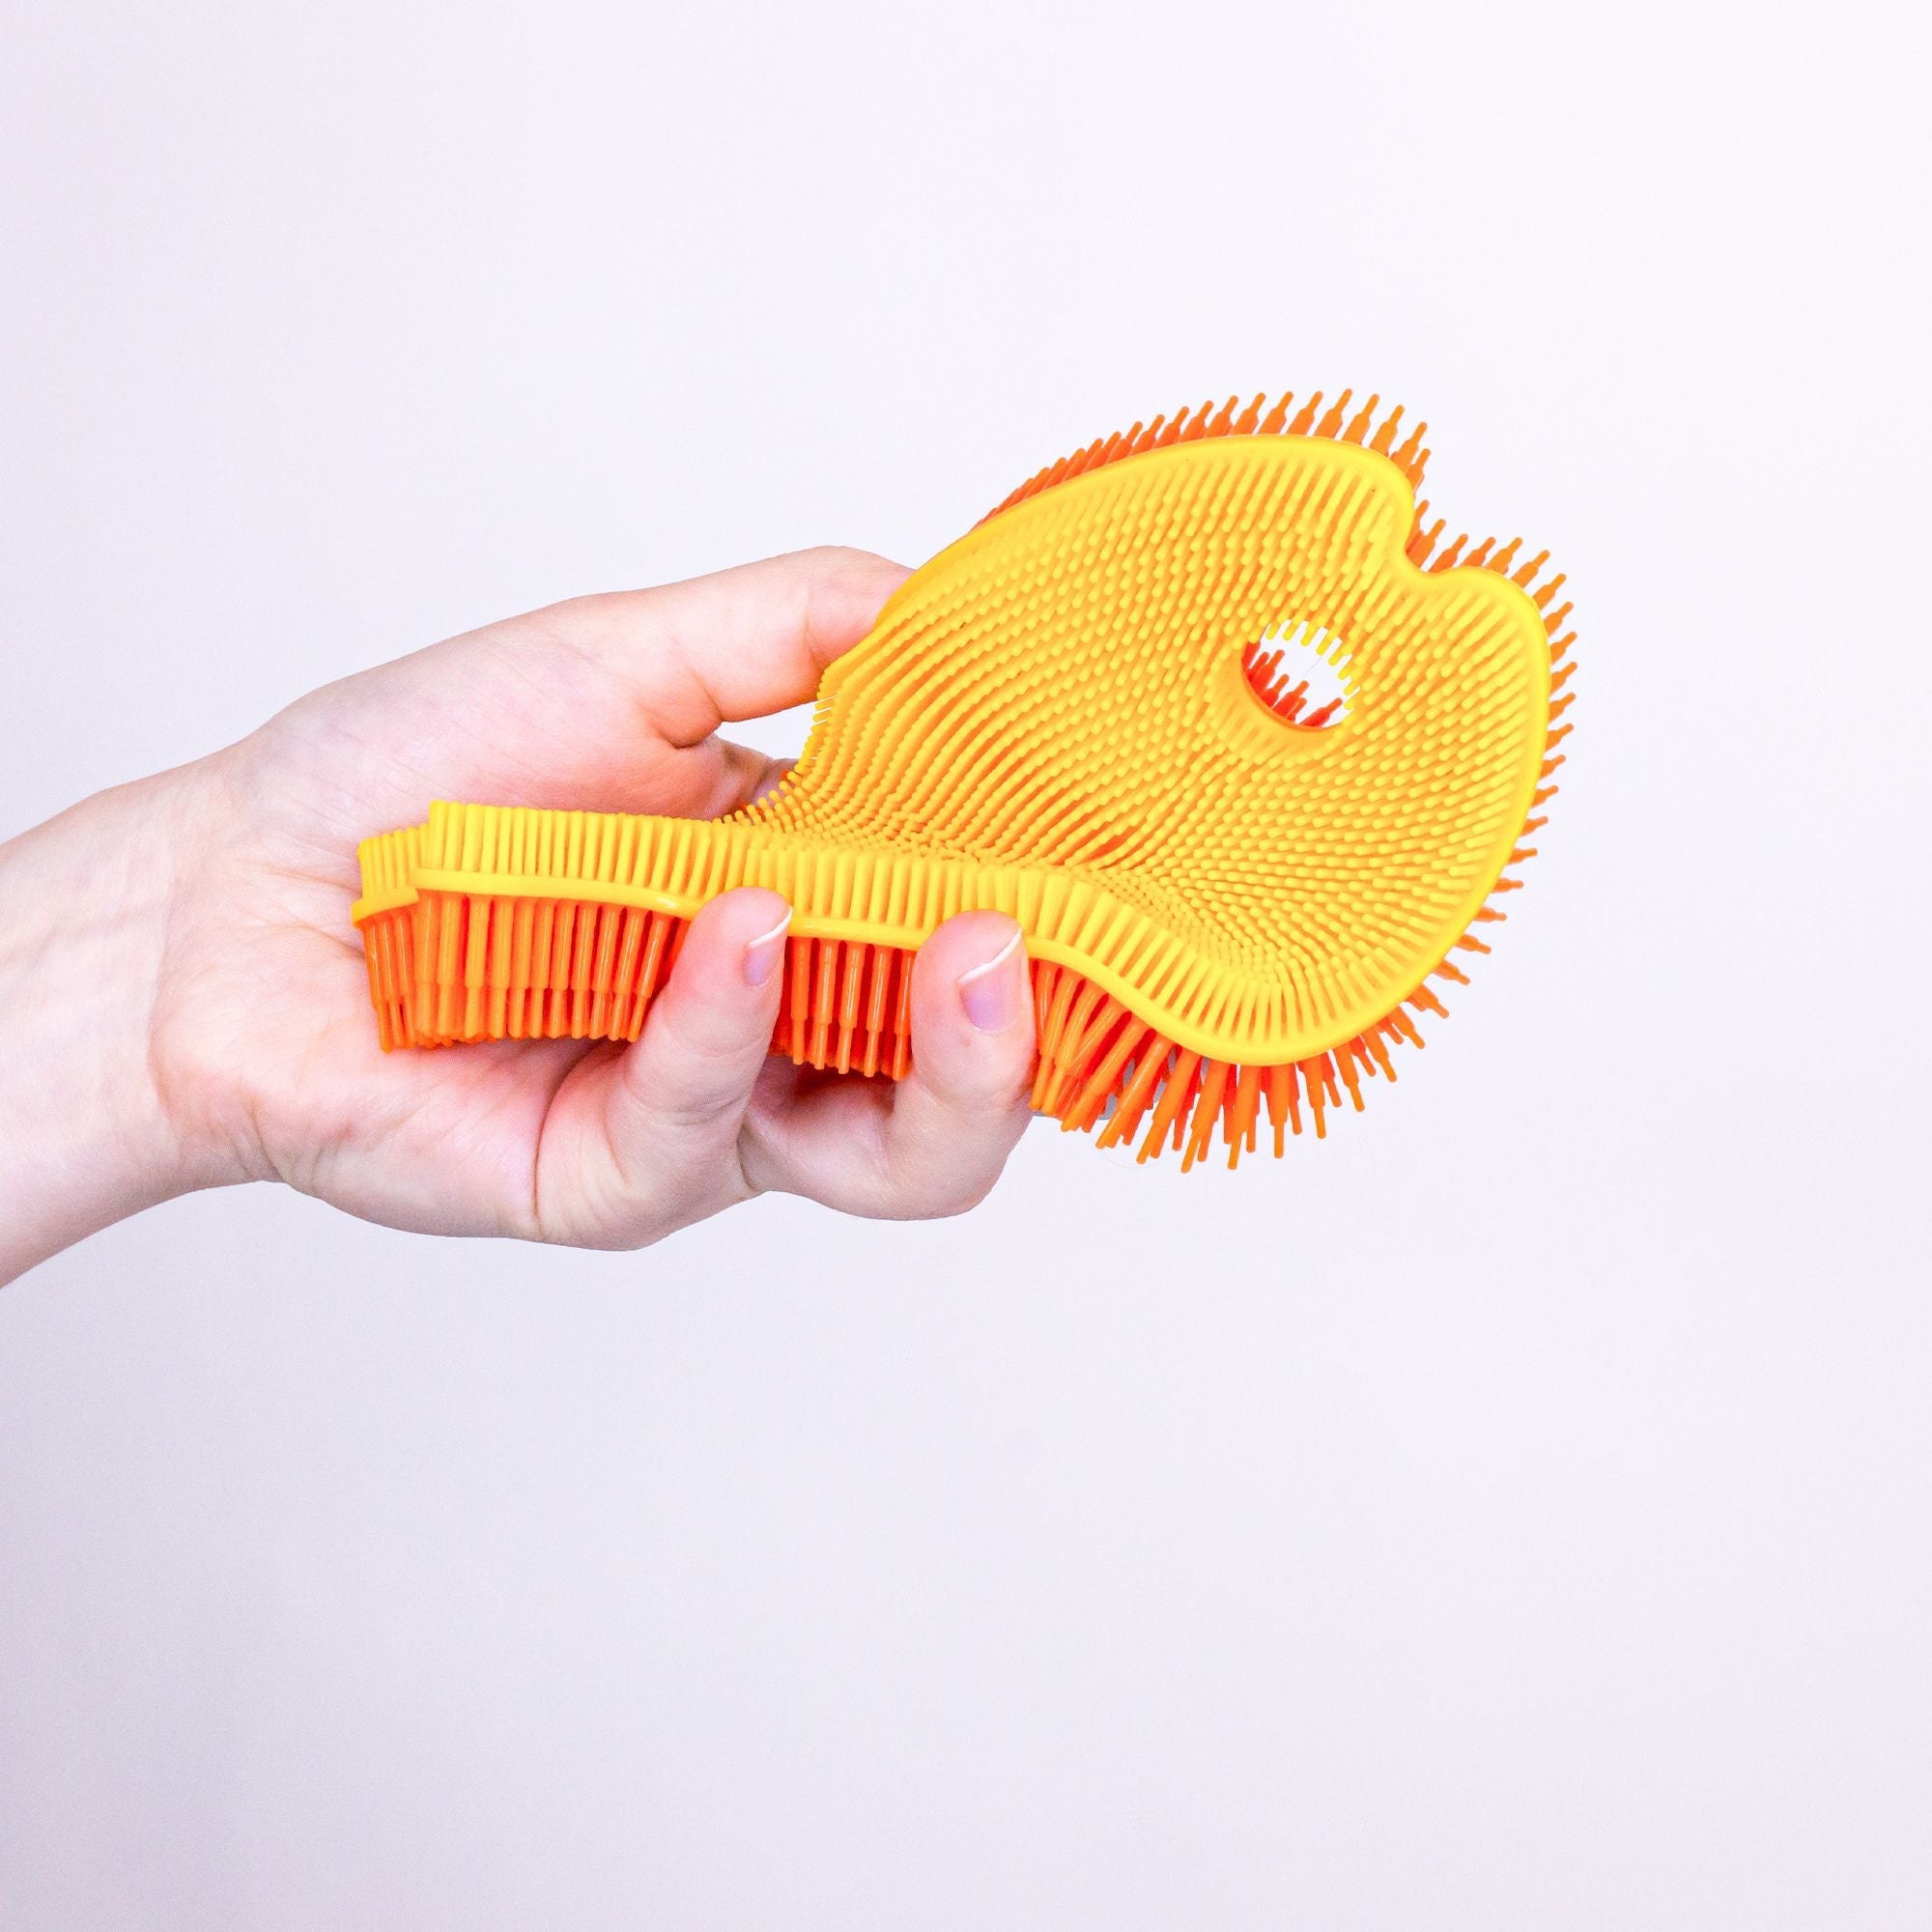 Sensory Fish Toy by Innobaby Spike – innobaby